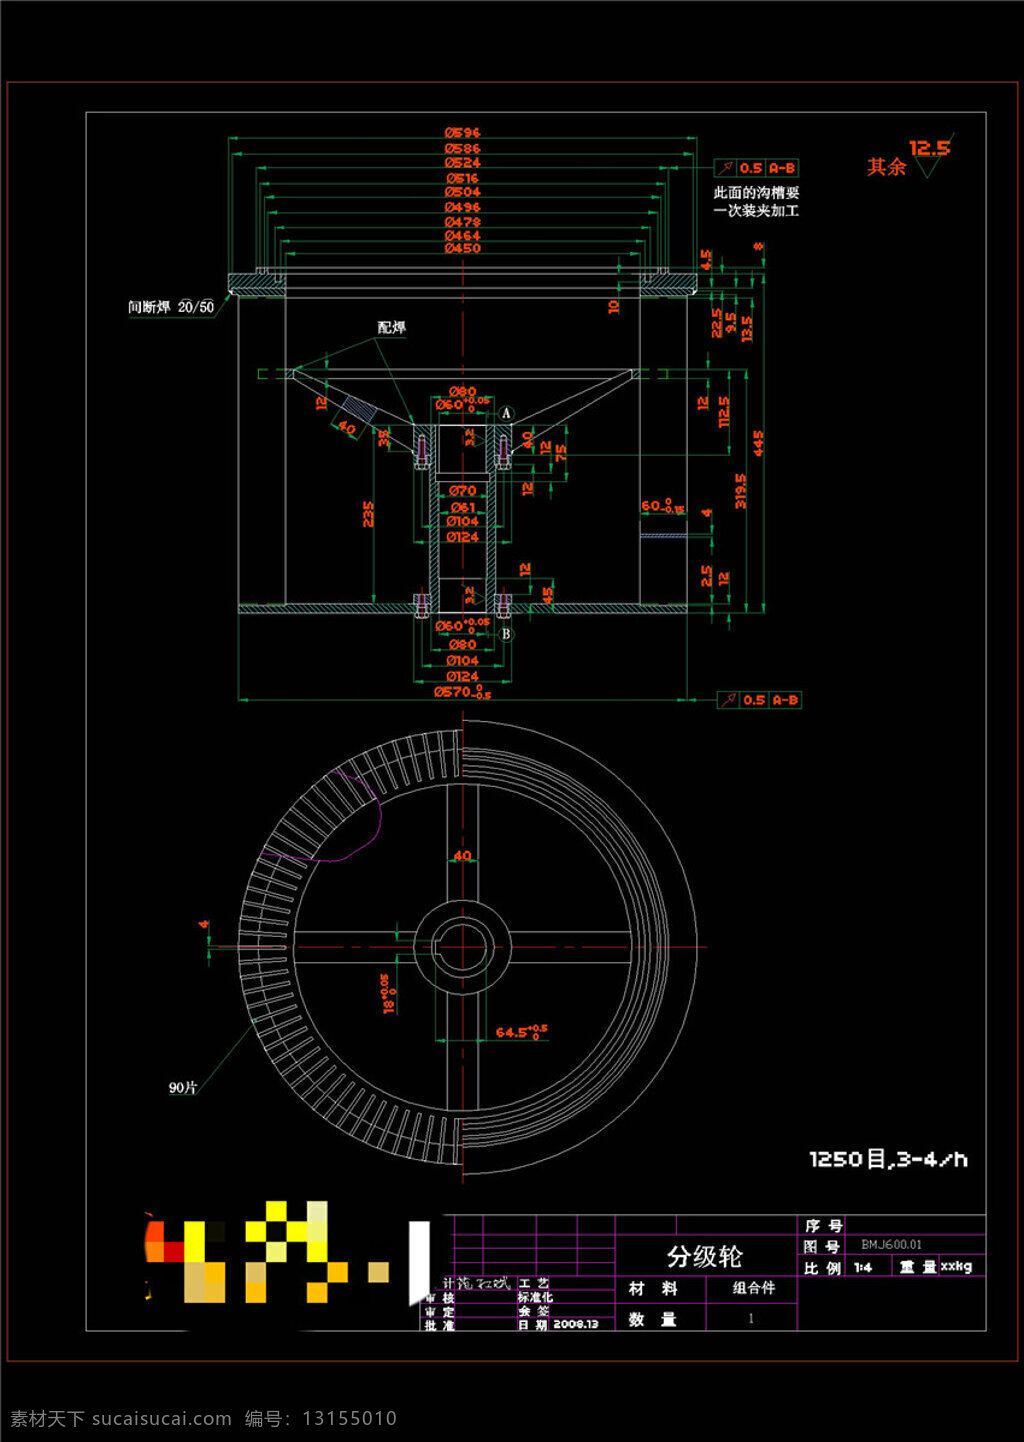 选粉机 分级 轮 机械 图纸 cad 机械素材 机械设计 机械图纸素材 dwg 黑色